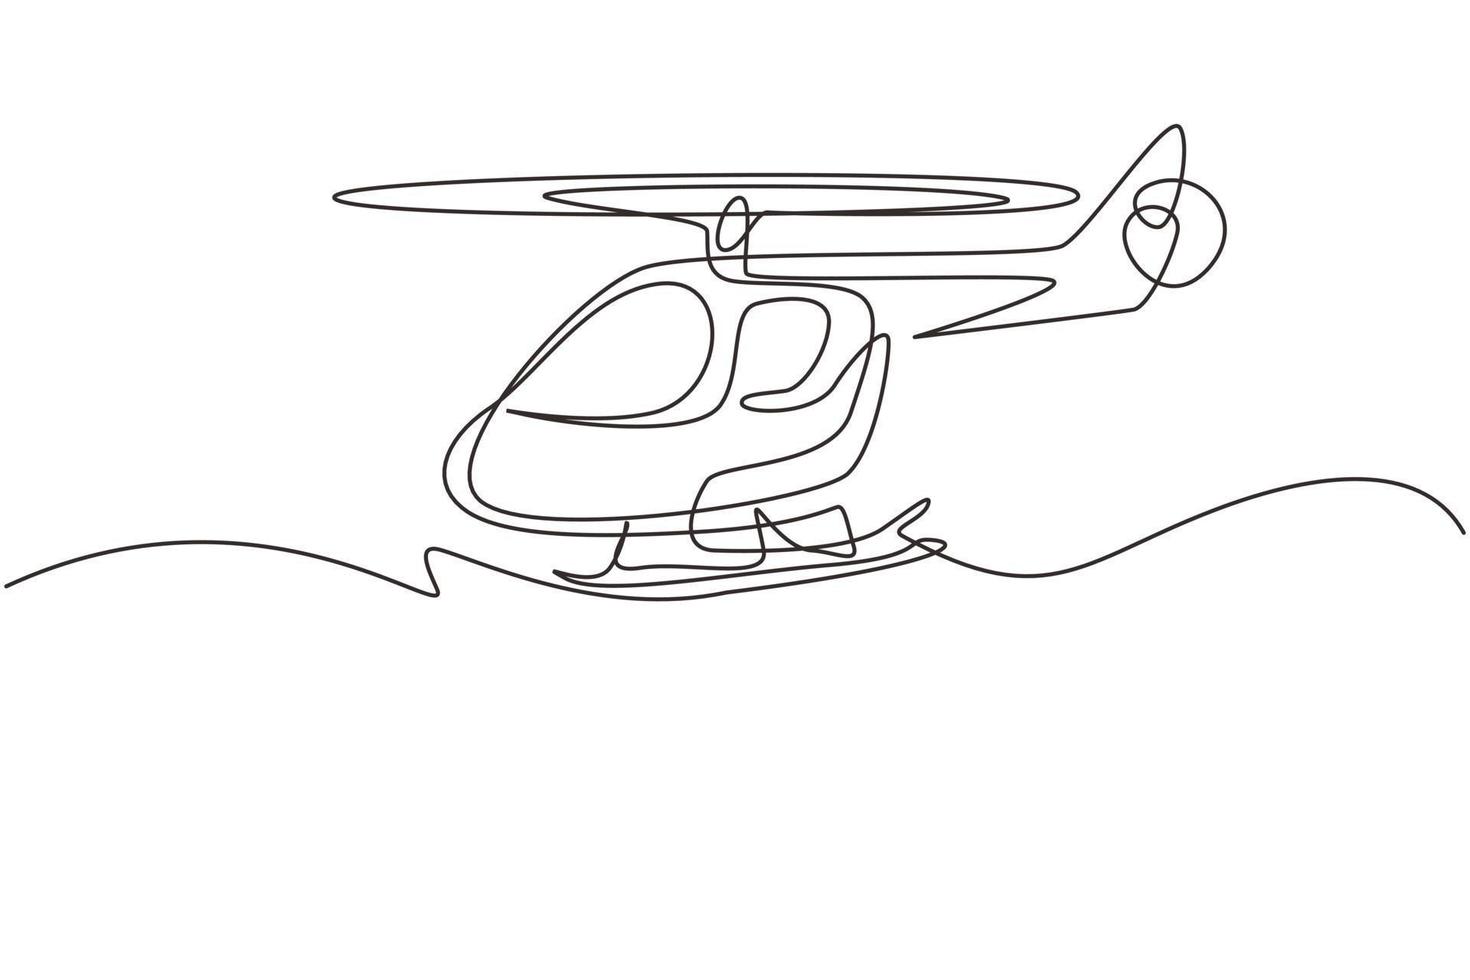 helicóptero de juguete de dibujo continuo de una línea. juguetes para niños, vehículos aéreos. helicóptero volador, para el transporte. transporte para vuelo en el aire. ilustración gráfica de vector de diseño de dibujo de una sola línea